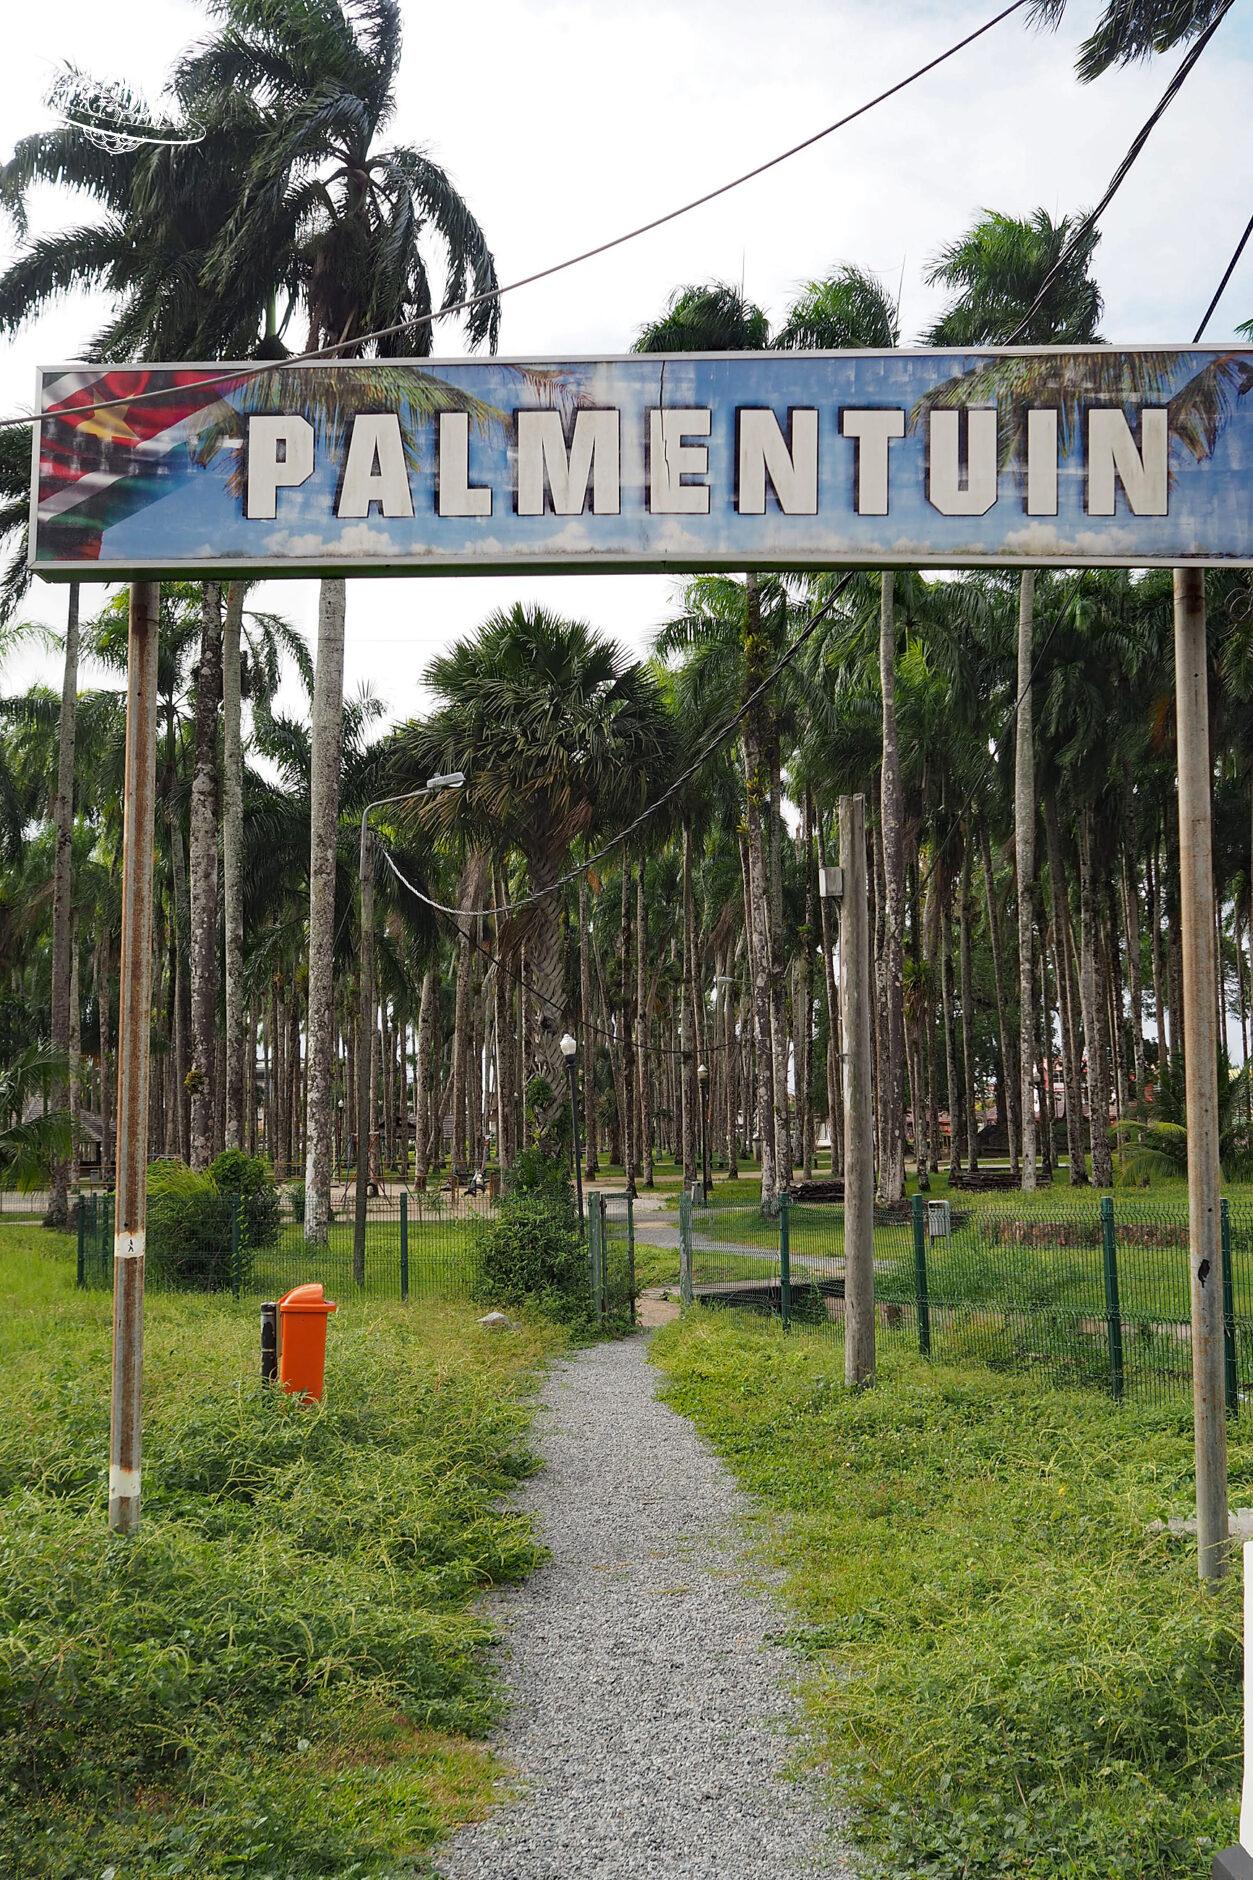 Eingang in den Palmenpark mit grossem Schild "Palmentuin"